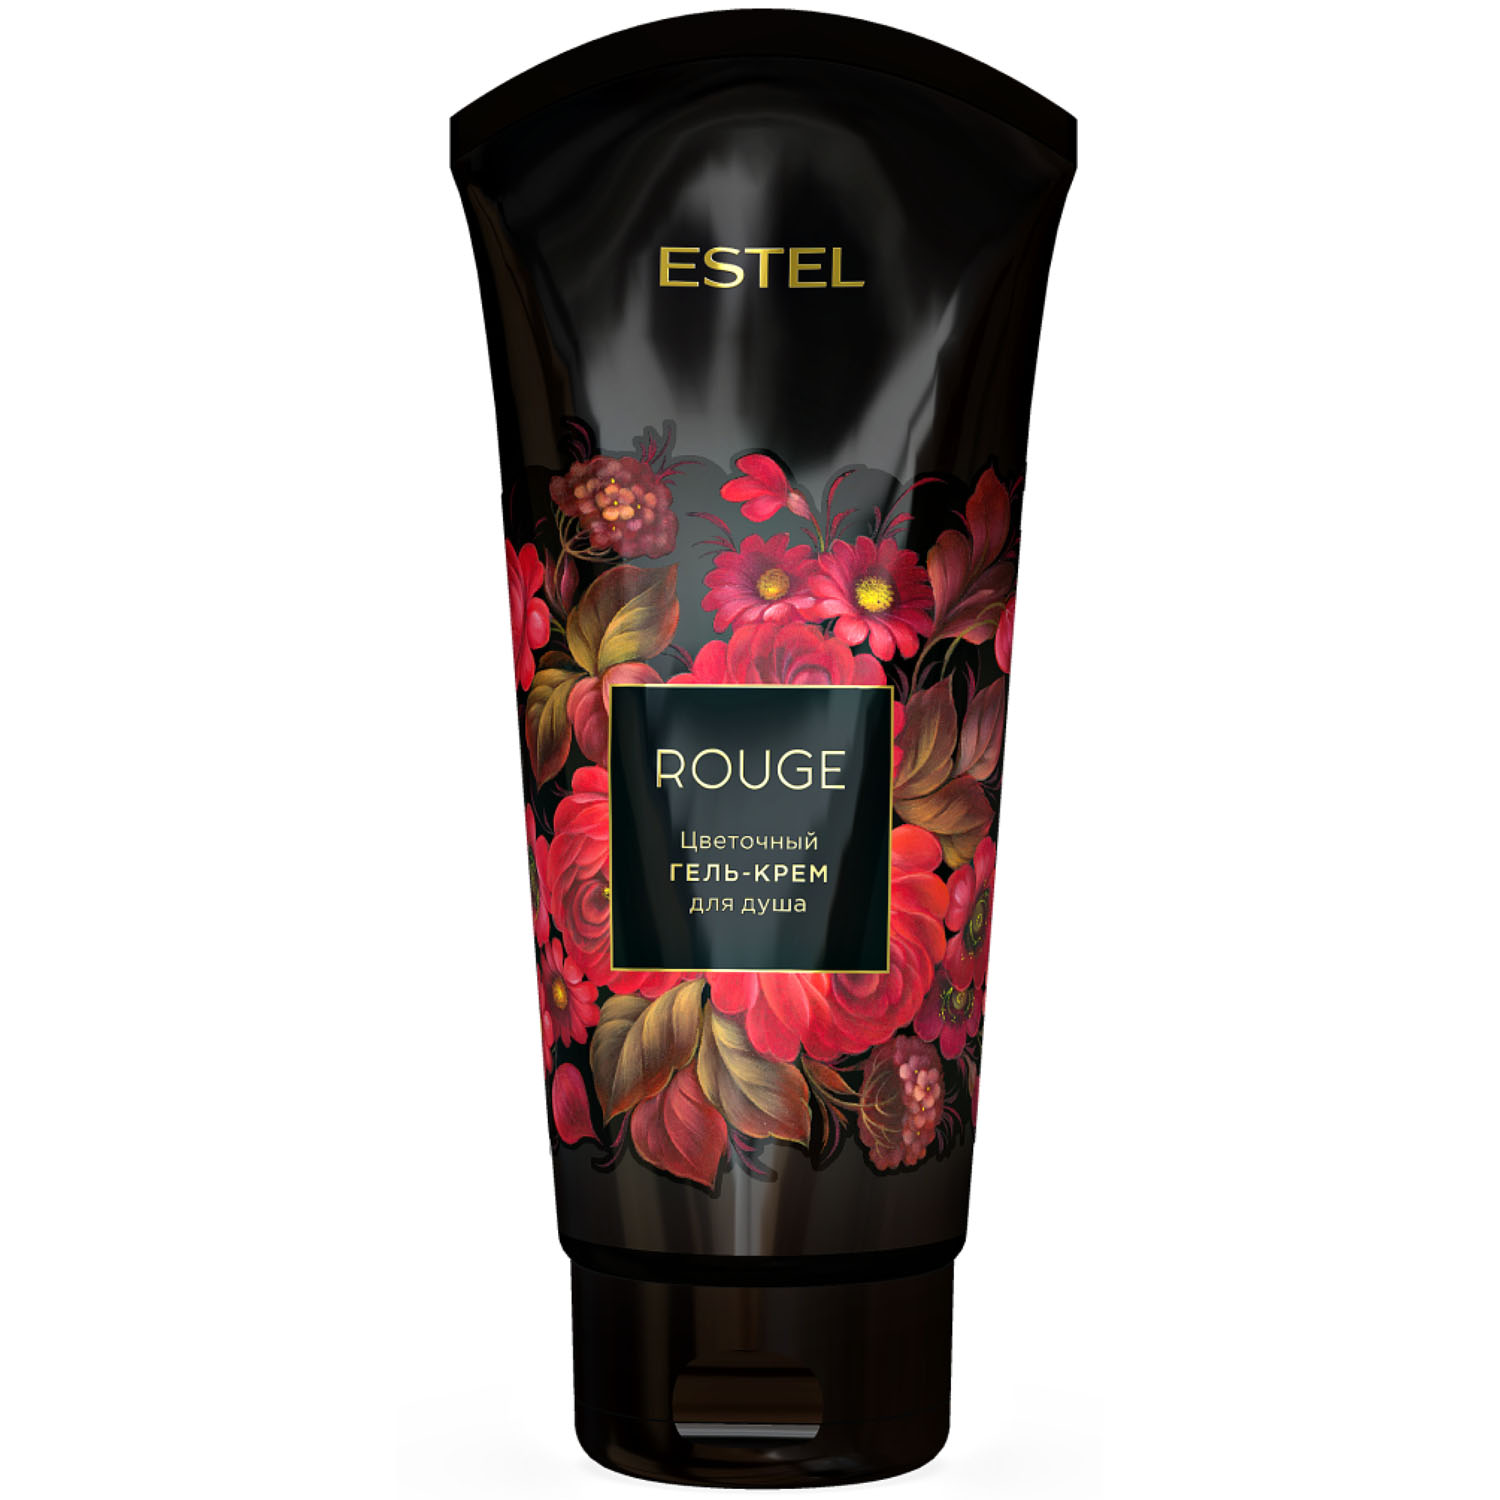 Еstеl flowers цветочный гель крем для ванны rouge 200мл ^акция SALE -33%